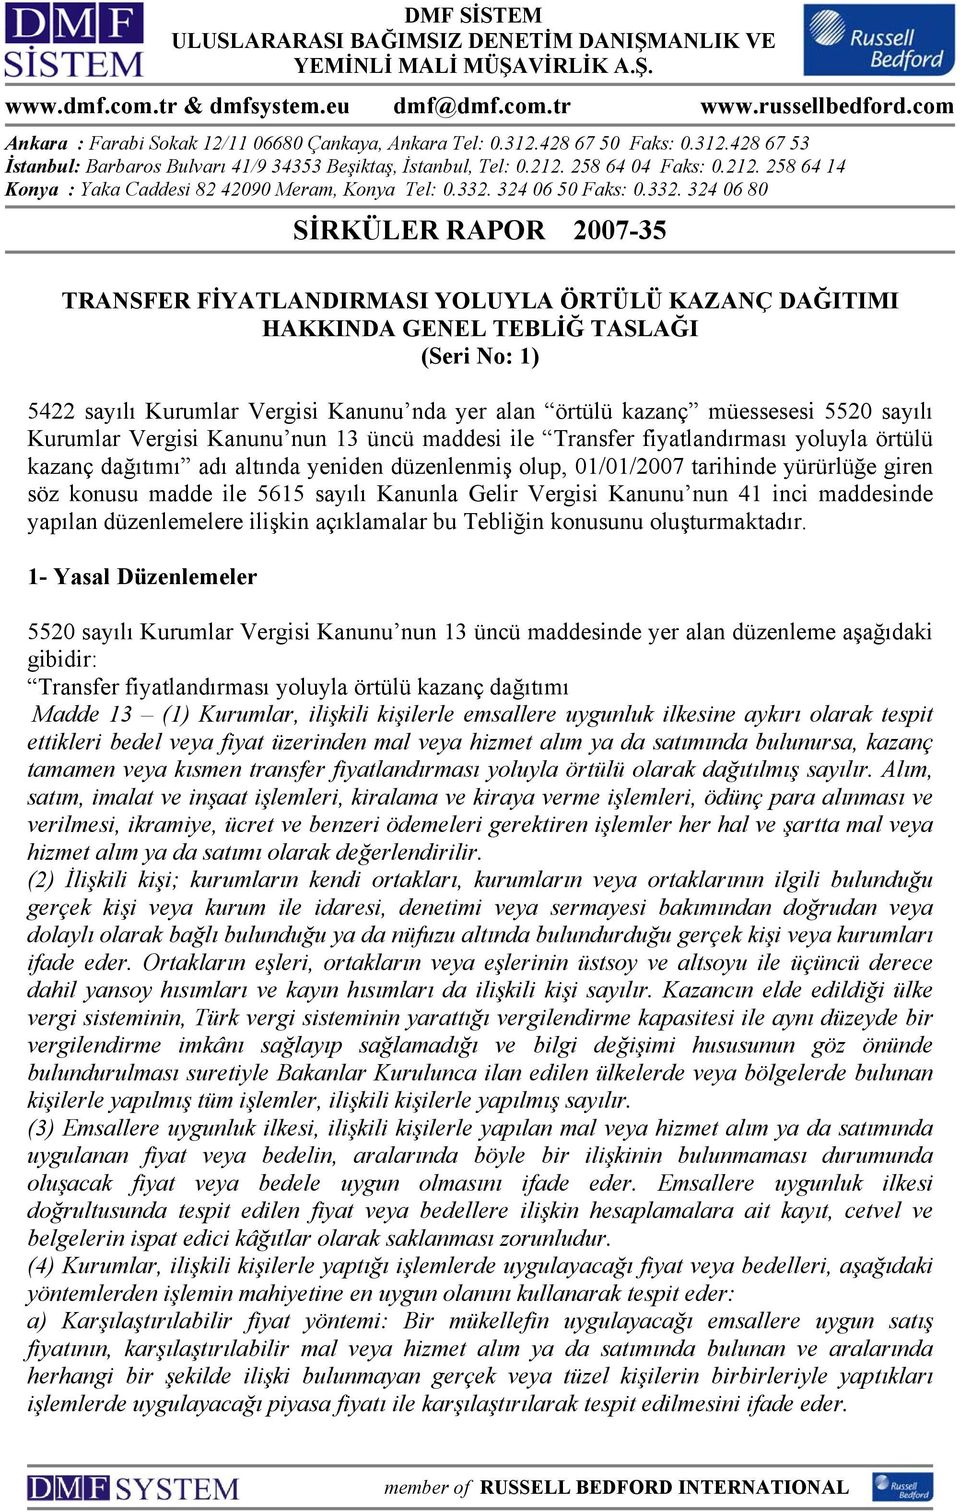 258 64 04 Faks: 0.212. 258 64 14 Konya : Yaka Caddesi 82 42090 Meram, Konya Tel: 0.332.